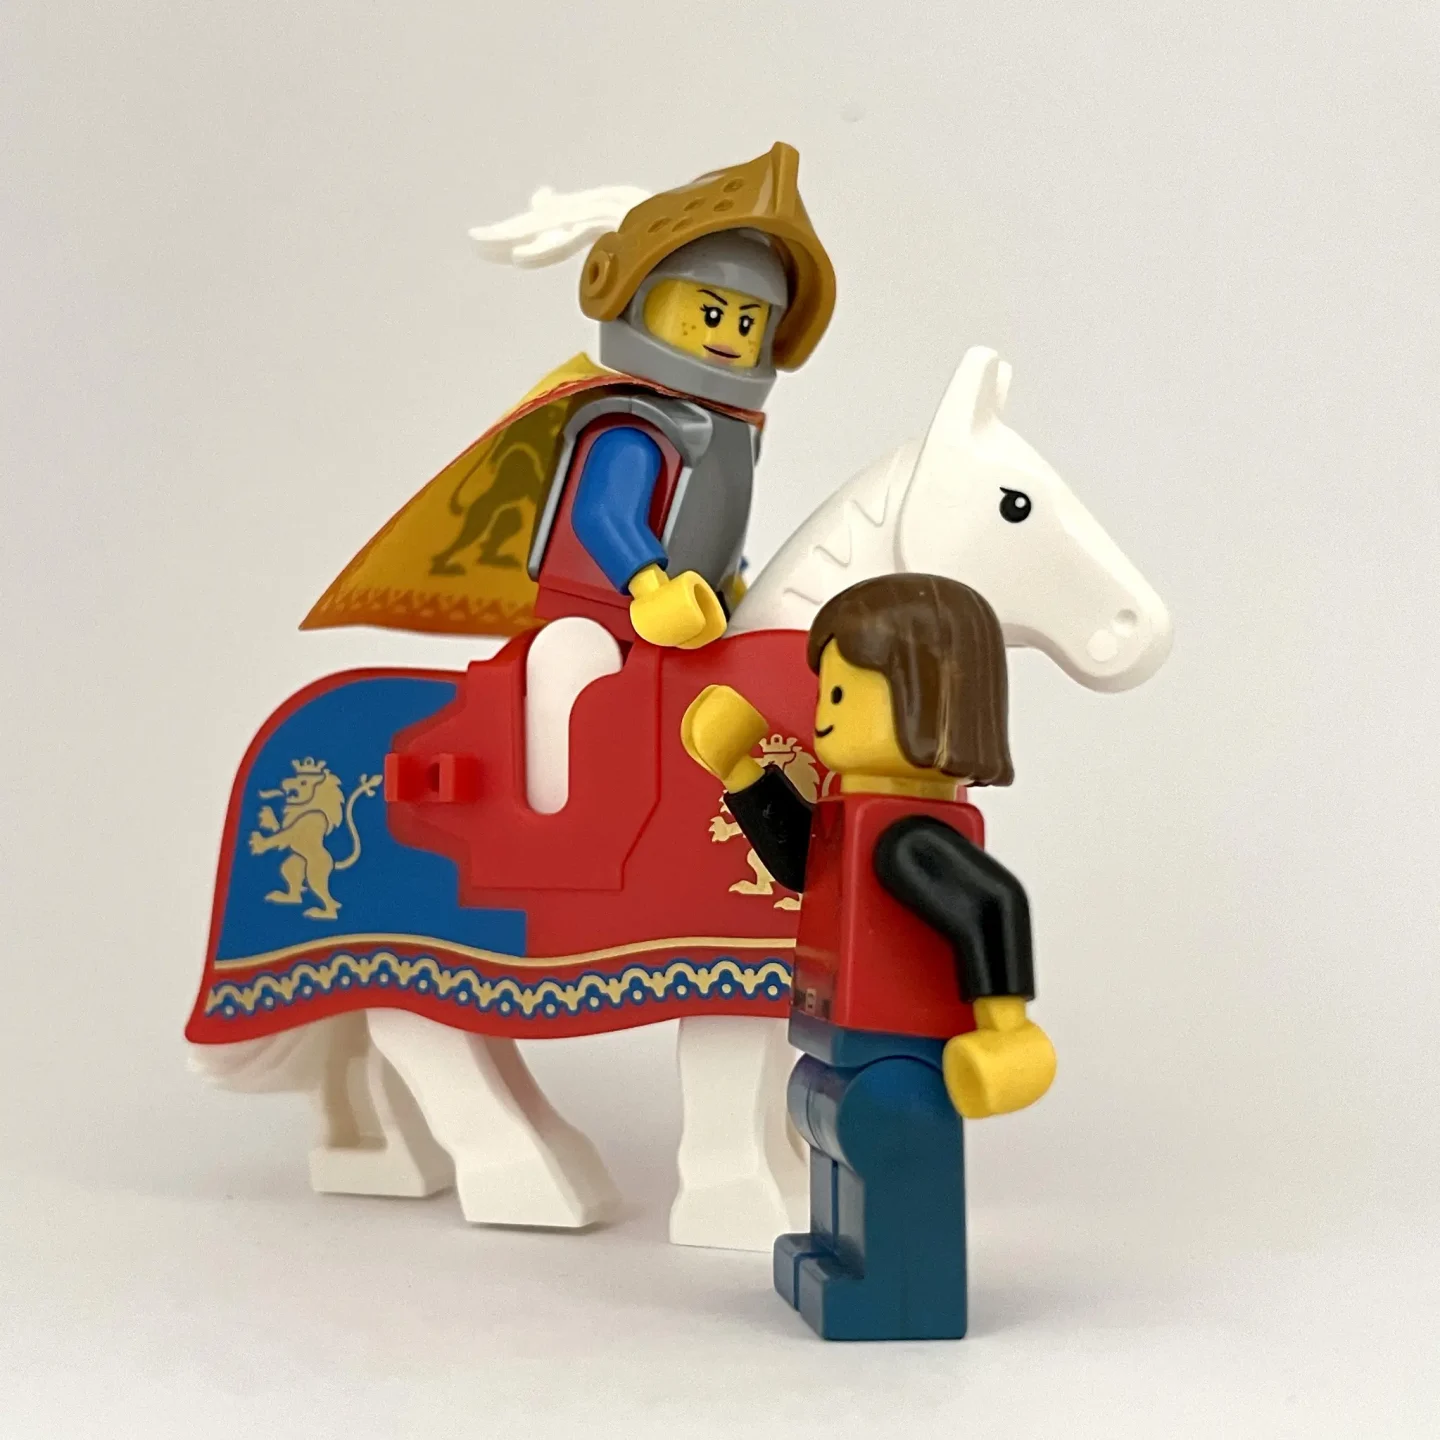 Yeni ve Eski LEGO Setleri Üzerine Bir Sohbet